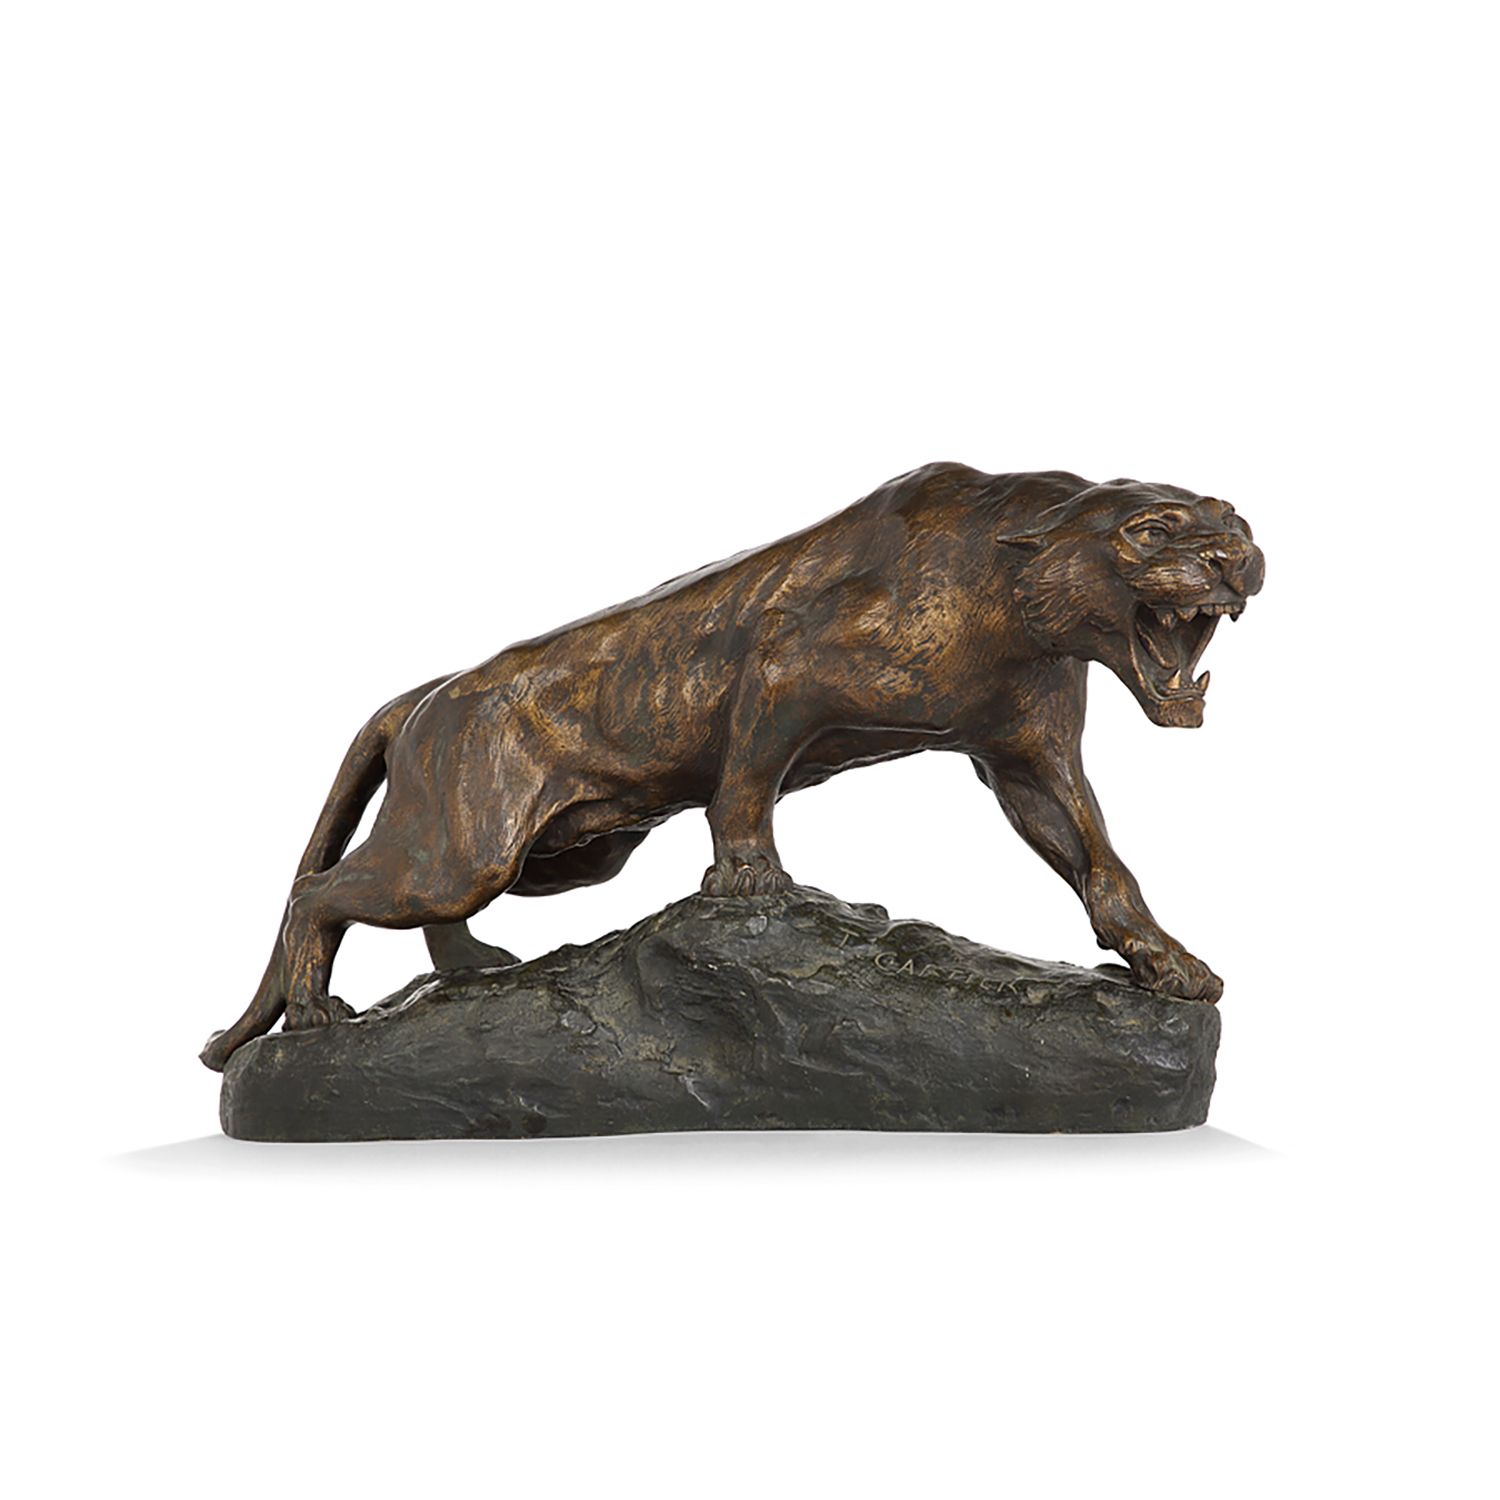 Null 托马斯-卡地亚(1879-1943)

火烧老虎

青铜色，带有对比强烈的棕色铜锈

在露台上签名

带棕色铜锈的青铜器；已签名

高度。27,5 c&hellip;